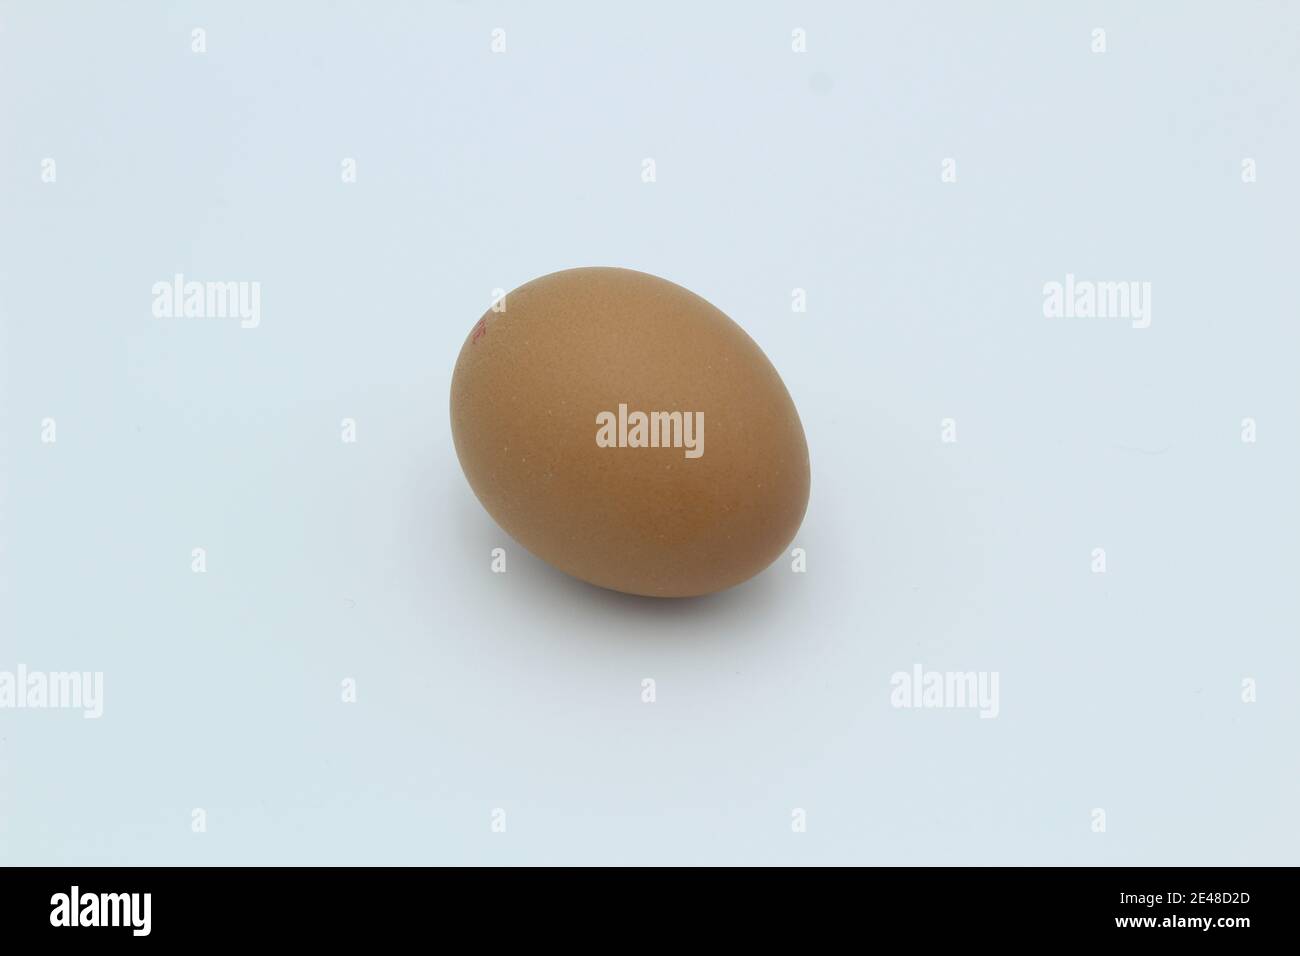 Un solo huevo de gallina marrón moteado en una llanura blanca fondo acostado en su lado Foto de stock